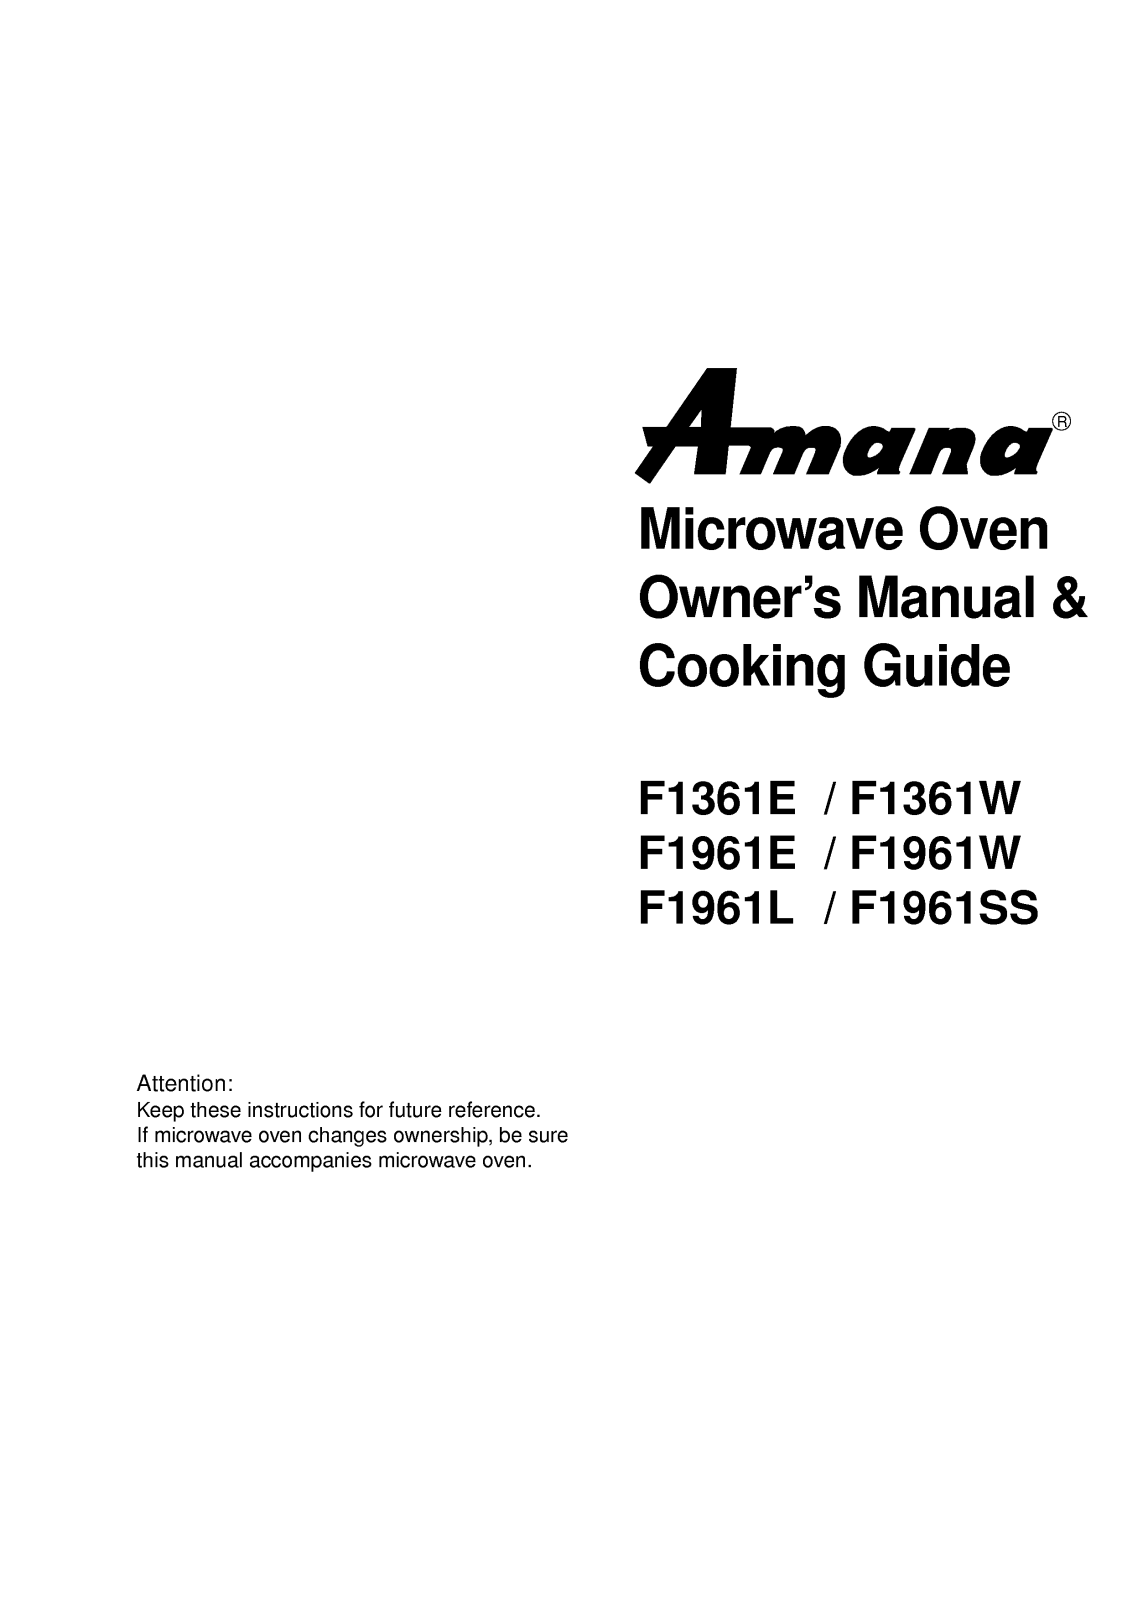 LG F1961C User Manual